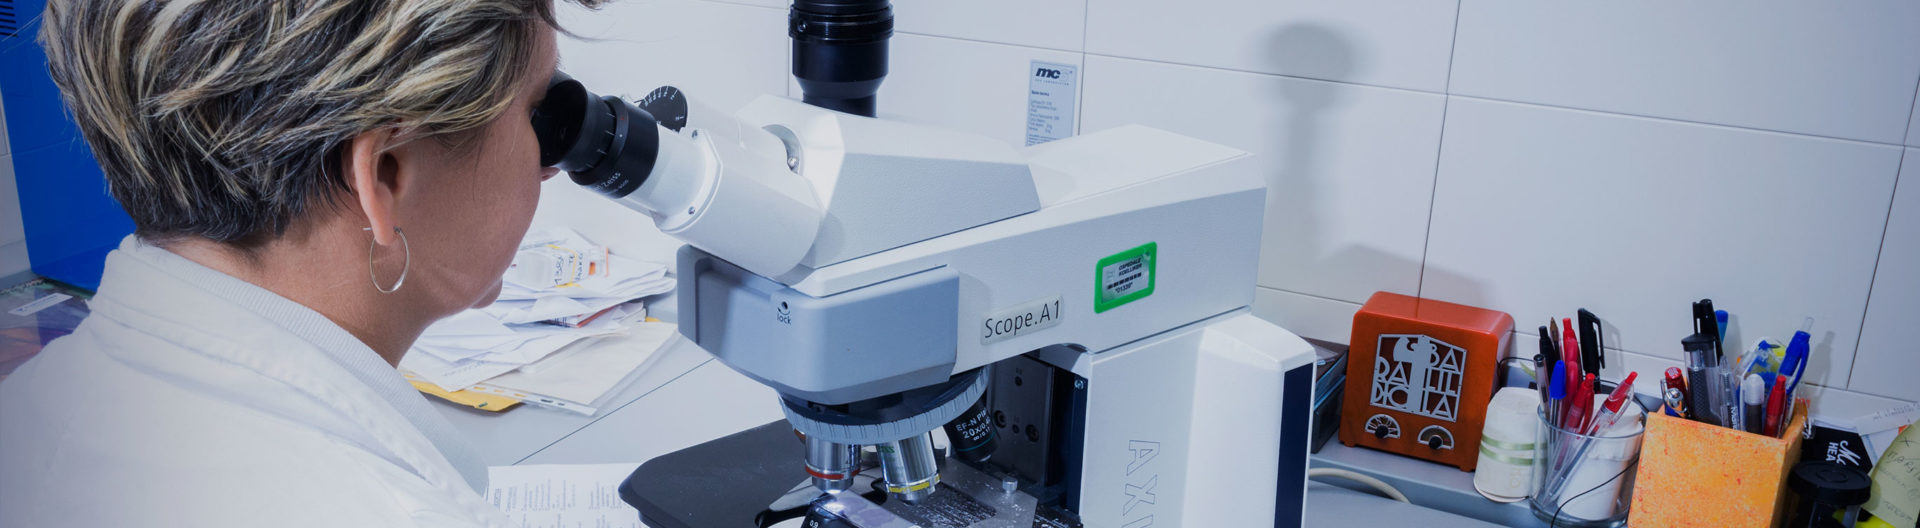 Il centro prelievi e il laboratorio analisi del sangue ottengono la certificazione ISO 9001 laboratorio elenco esami head